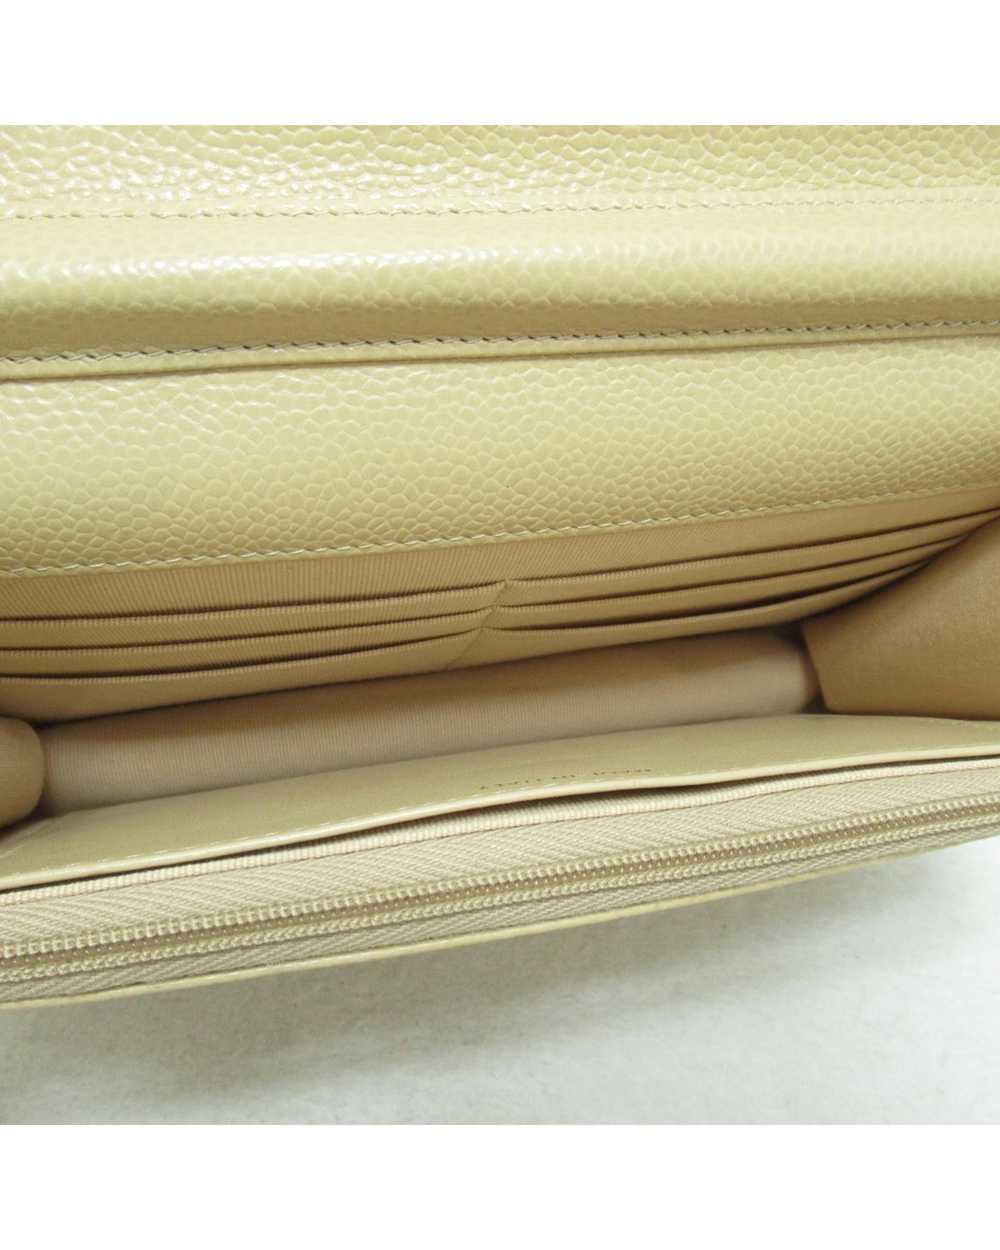 Chanel Beige Leather Shoulder Bag - image 4